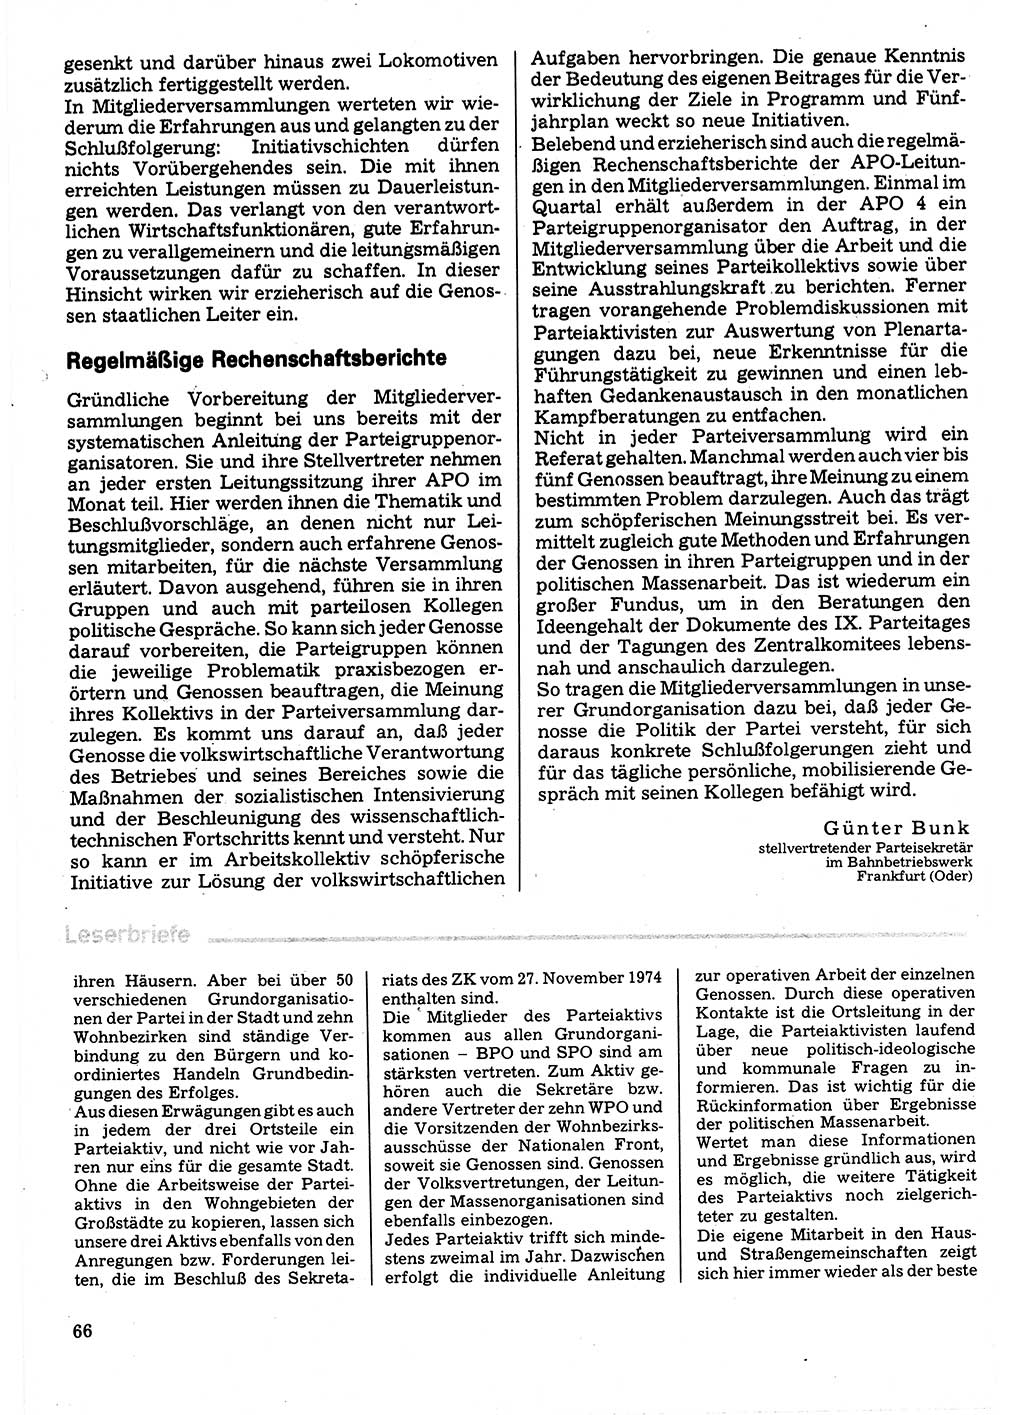 Neuer Weg (NW), Organ des Zentralkomitees (ZK) der SED (Sozialistische Einheitspartei Deutschlands) für Fragen des Parteilebens, 32. Jahrgang [Deutsche Demokratische Republik (DDR)] 1977, Seite 66 (NW ZK SED DDR 1977, S. 66)